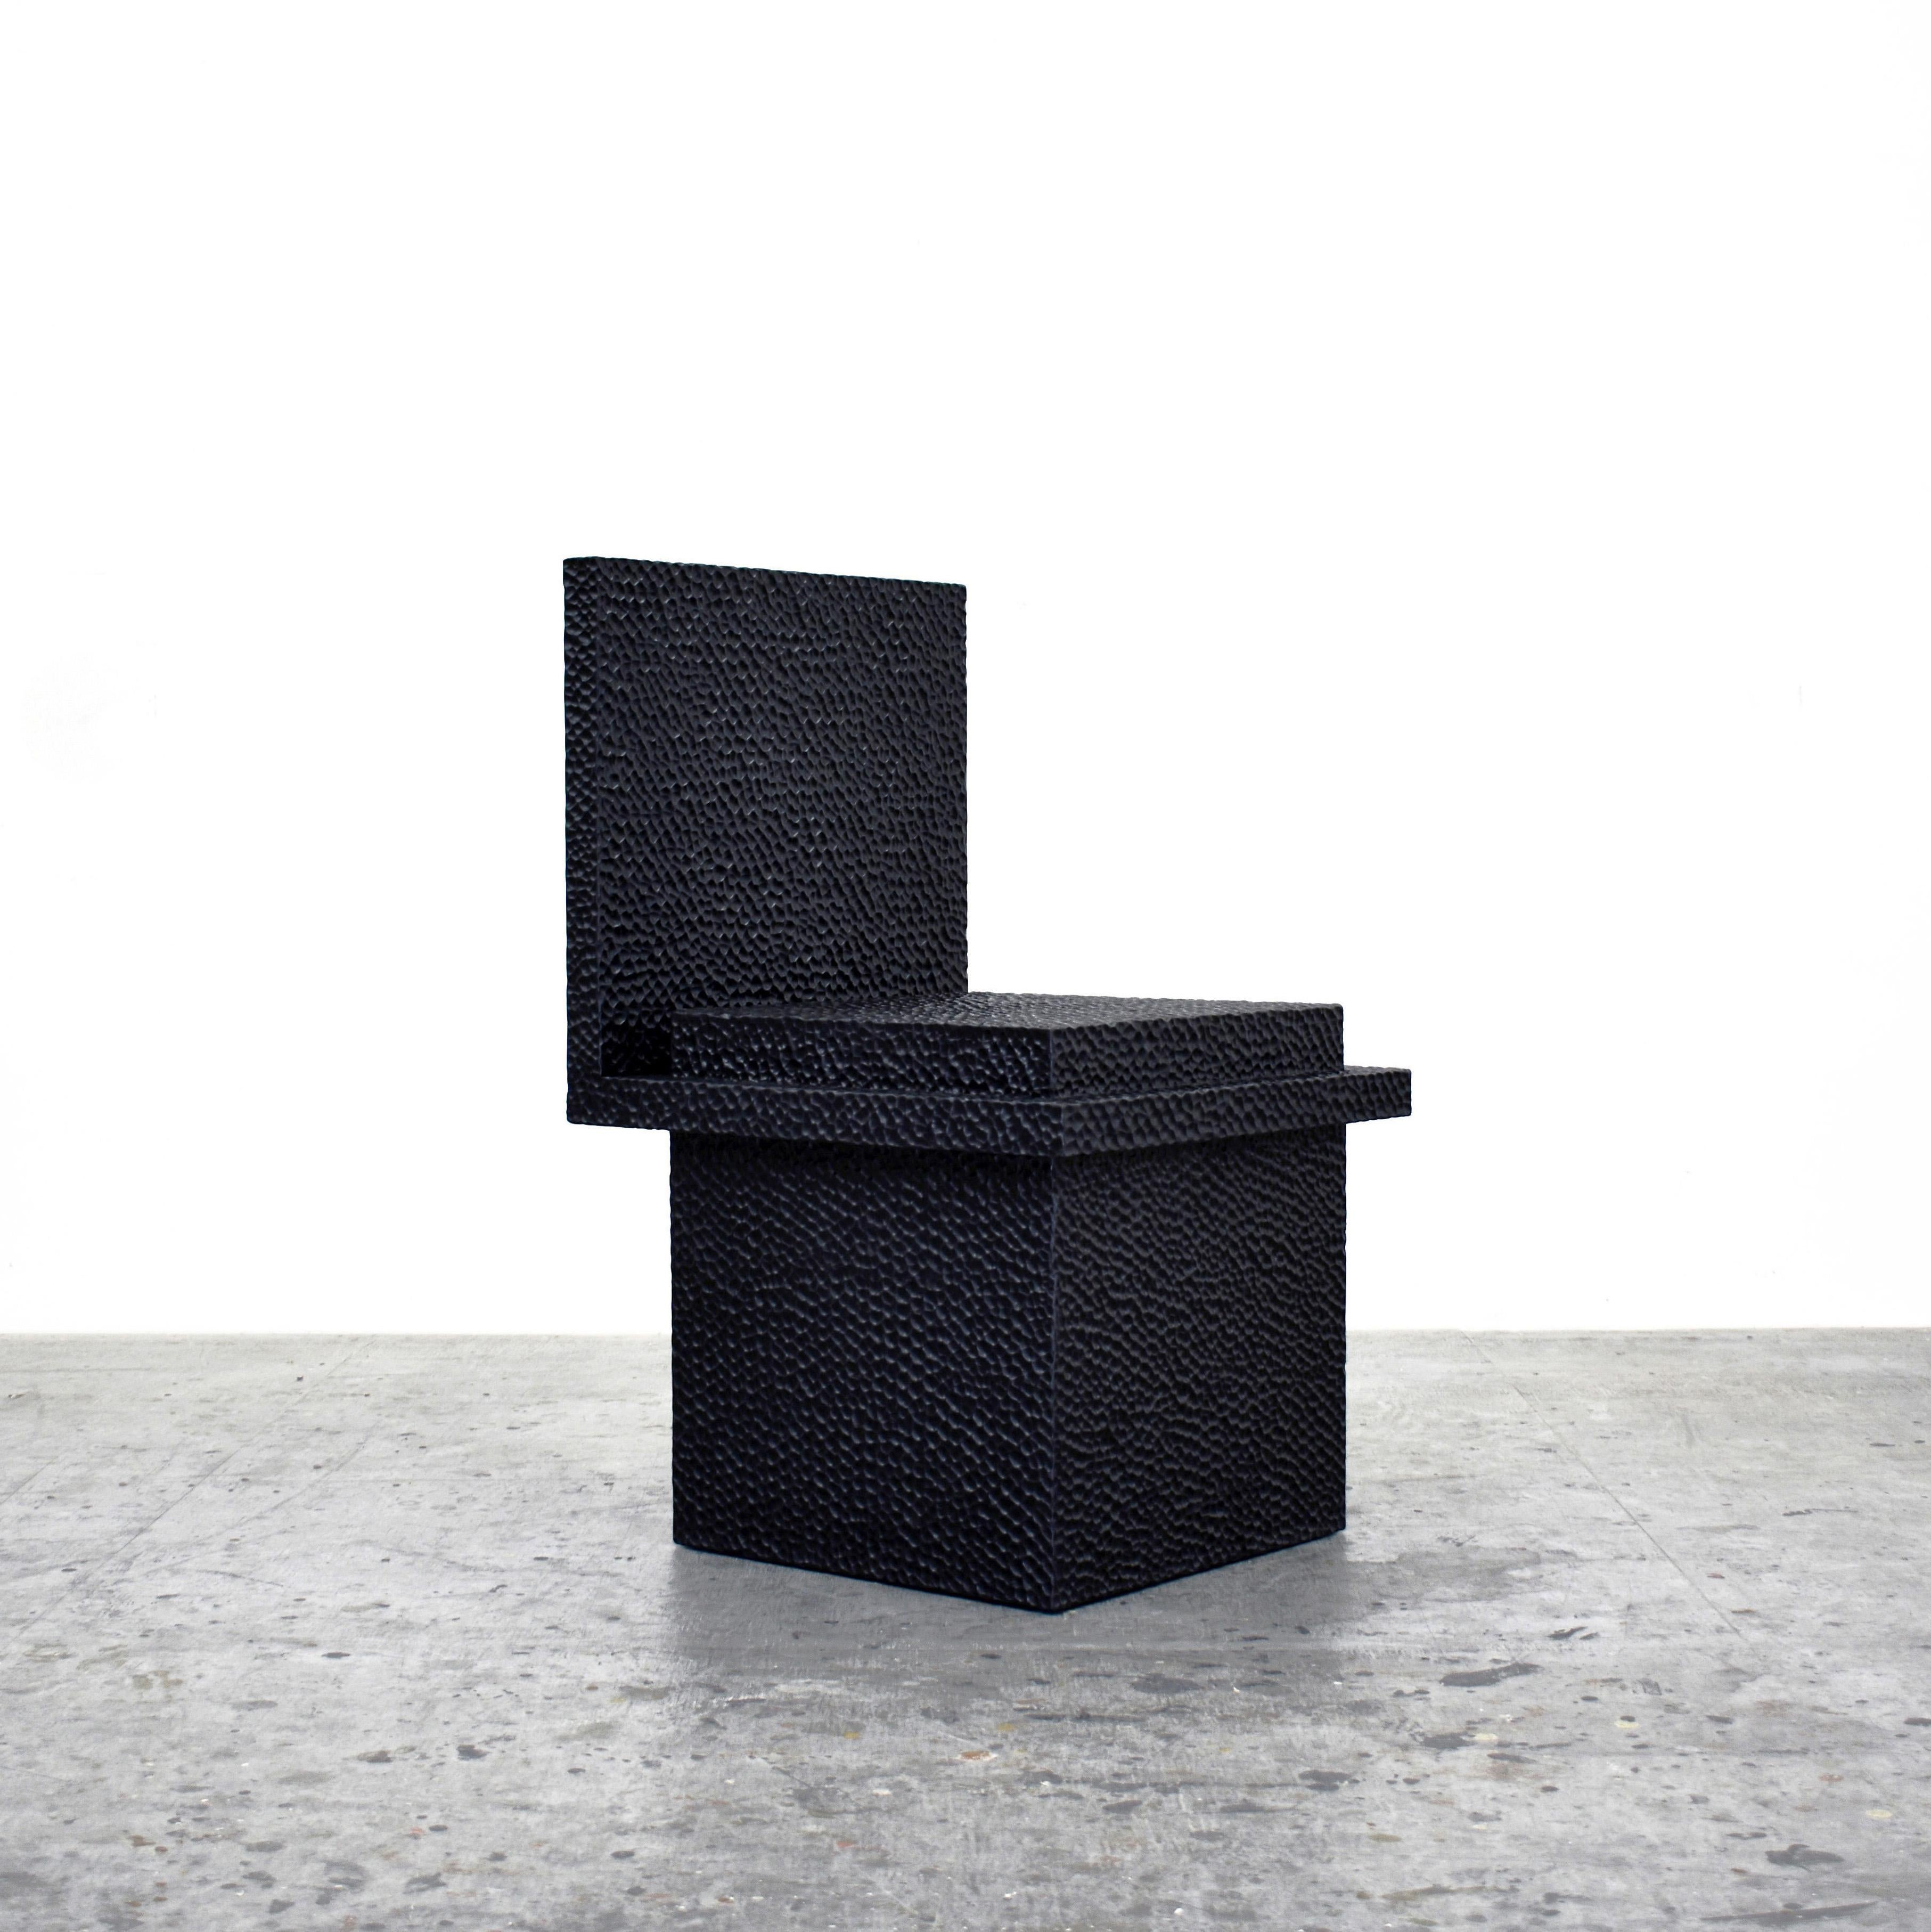 C1-Stuhl von John Eric Byers.
Abmessungen: 49,5 x 45,8 x 77,5 cm
MATERIALIEN: Geschnitztes geschwärztes Ahornholz

Alle Werke werden individuell auf Bestellung handgefertigt.

John Eric Byers schafft geometrisch inspirierte Stücke, die